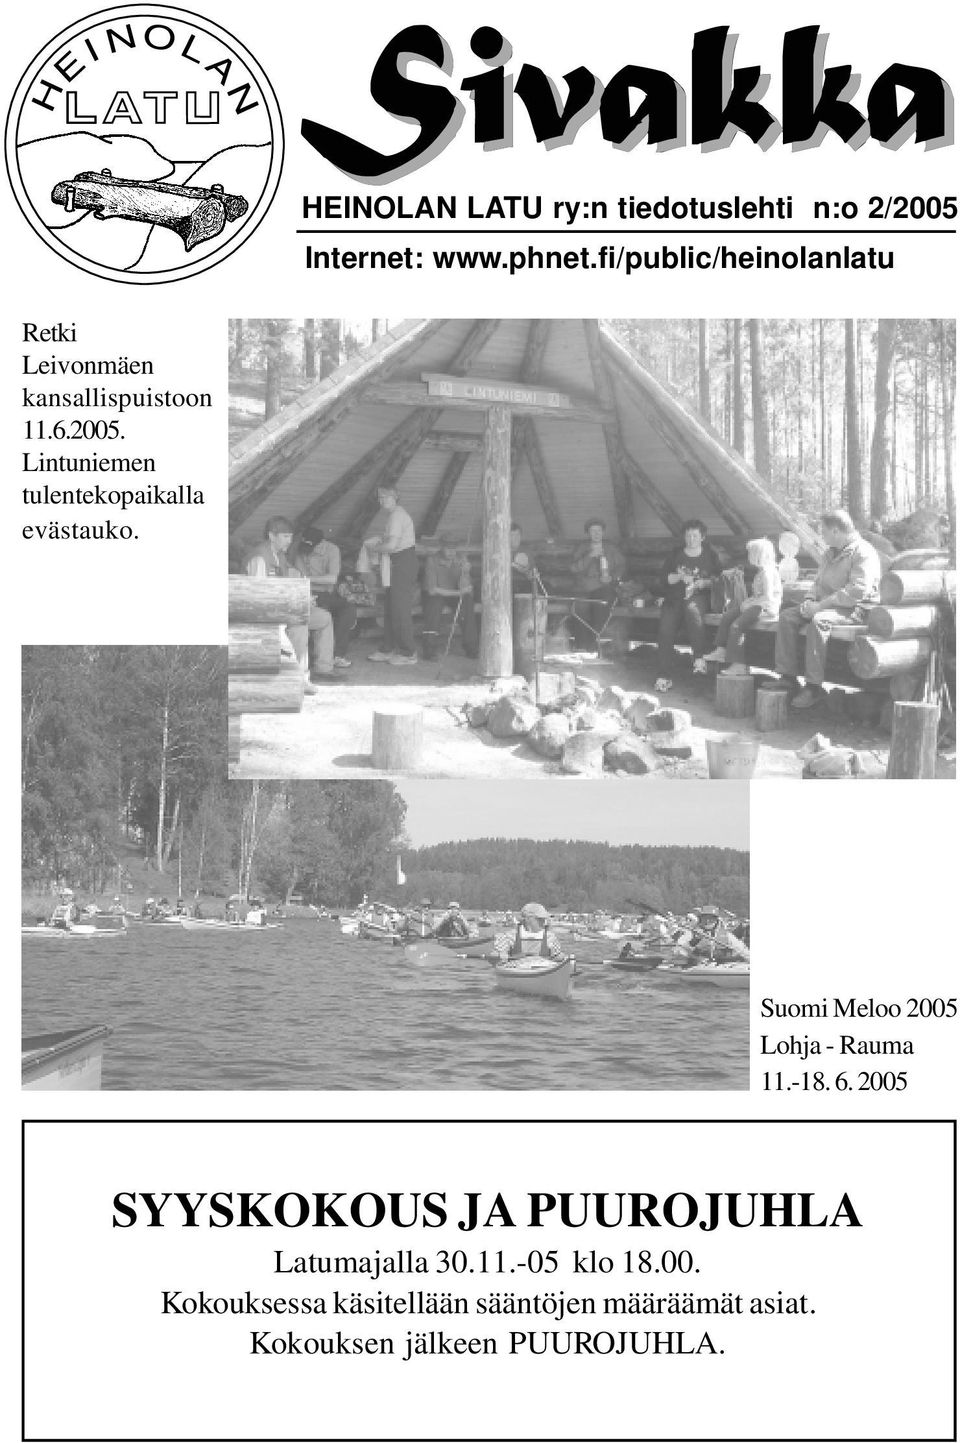 Lintuniemen tulentekopaikalla evästauko. Suomi Meloo 2005 Lohja - Rauma 11.-18. 6.